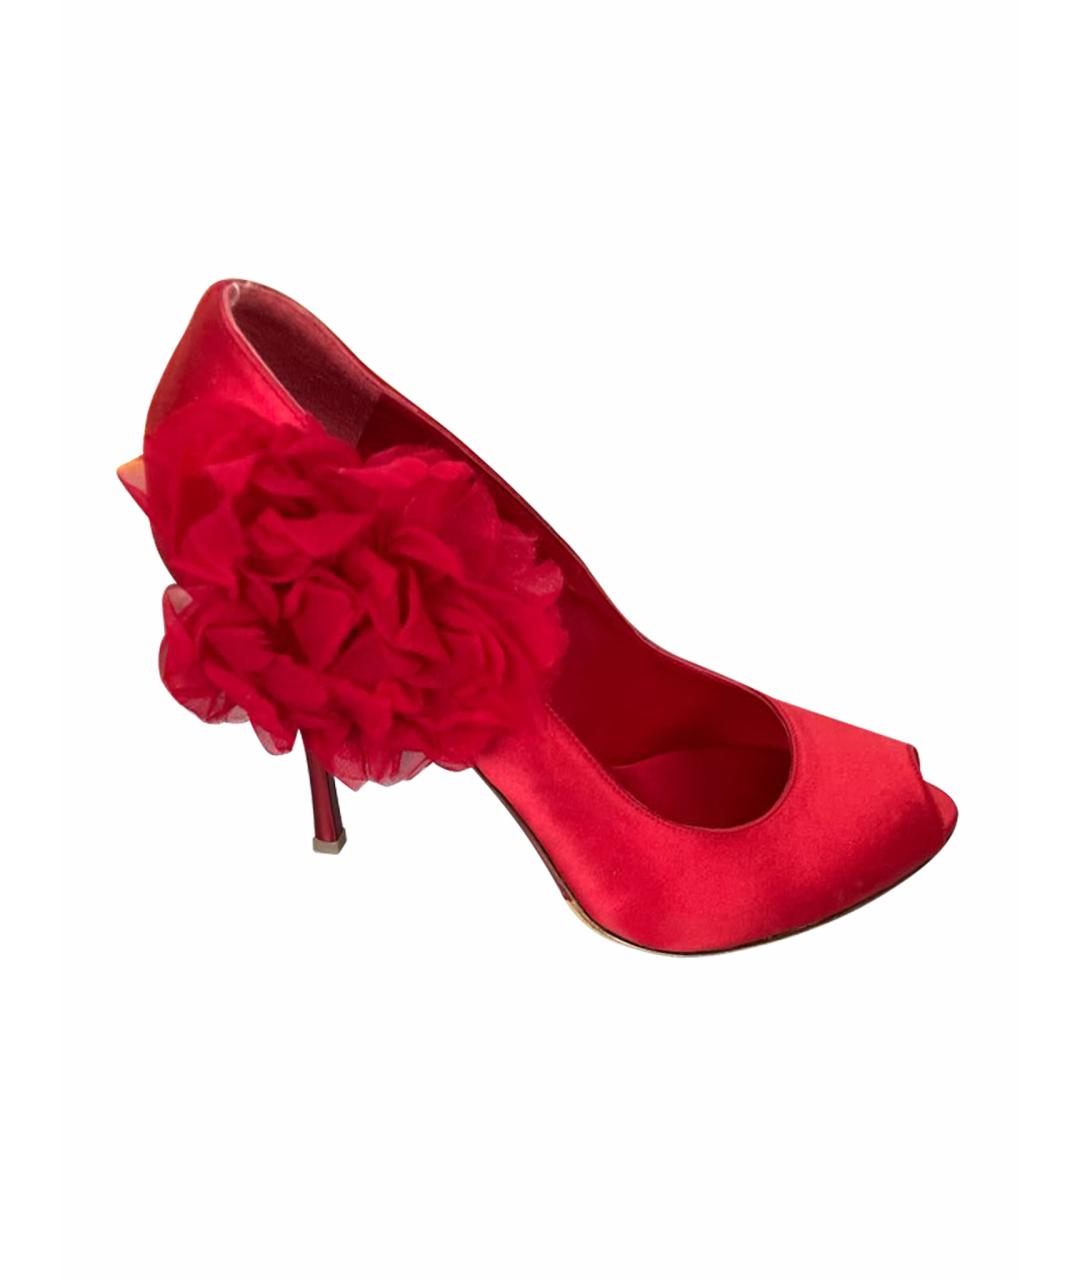 GIAN MARCO LORENZI Красные текстильные туфли, фото 1